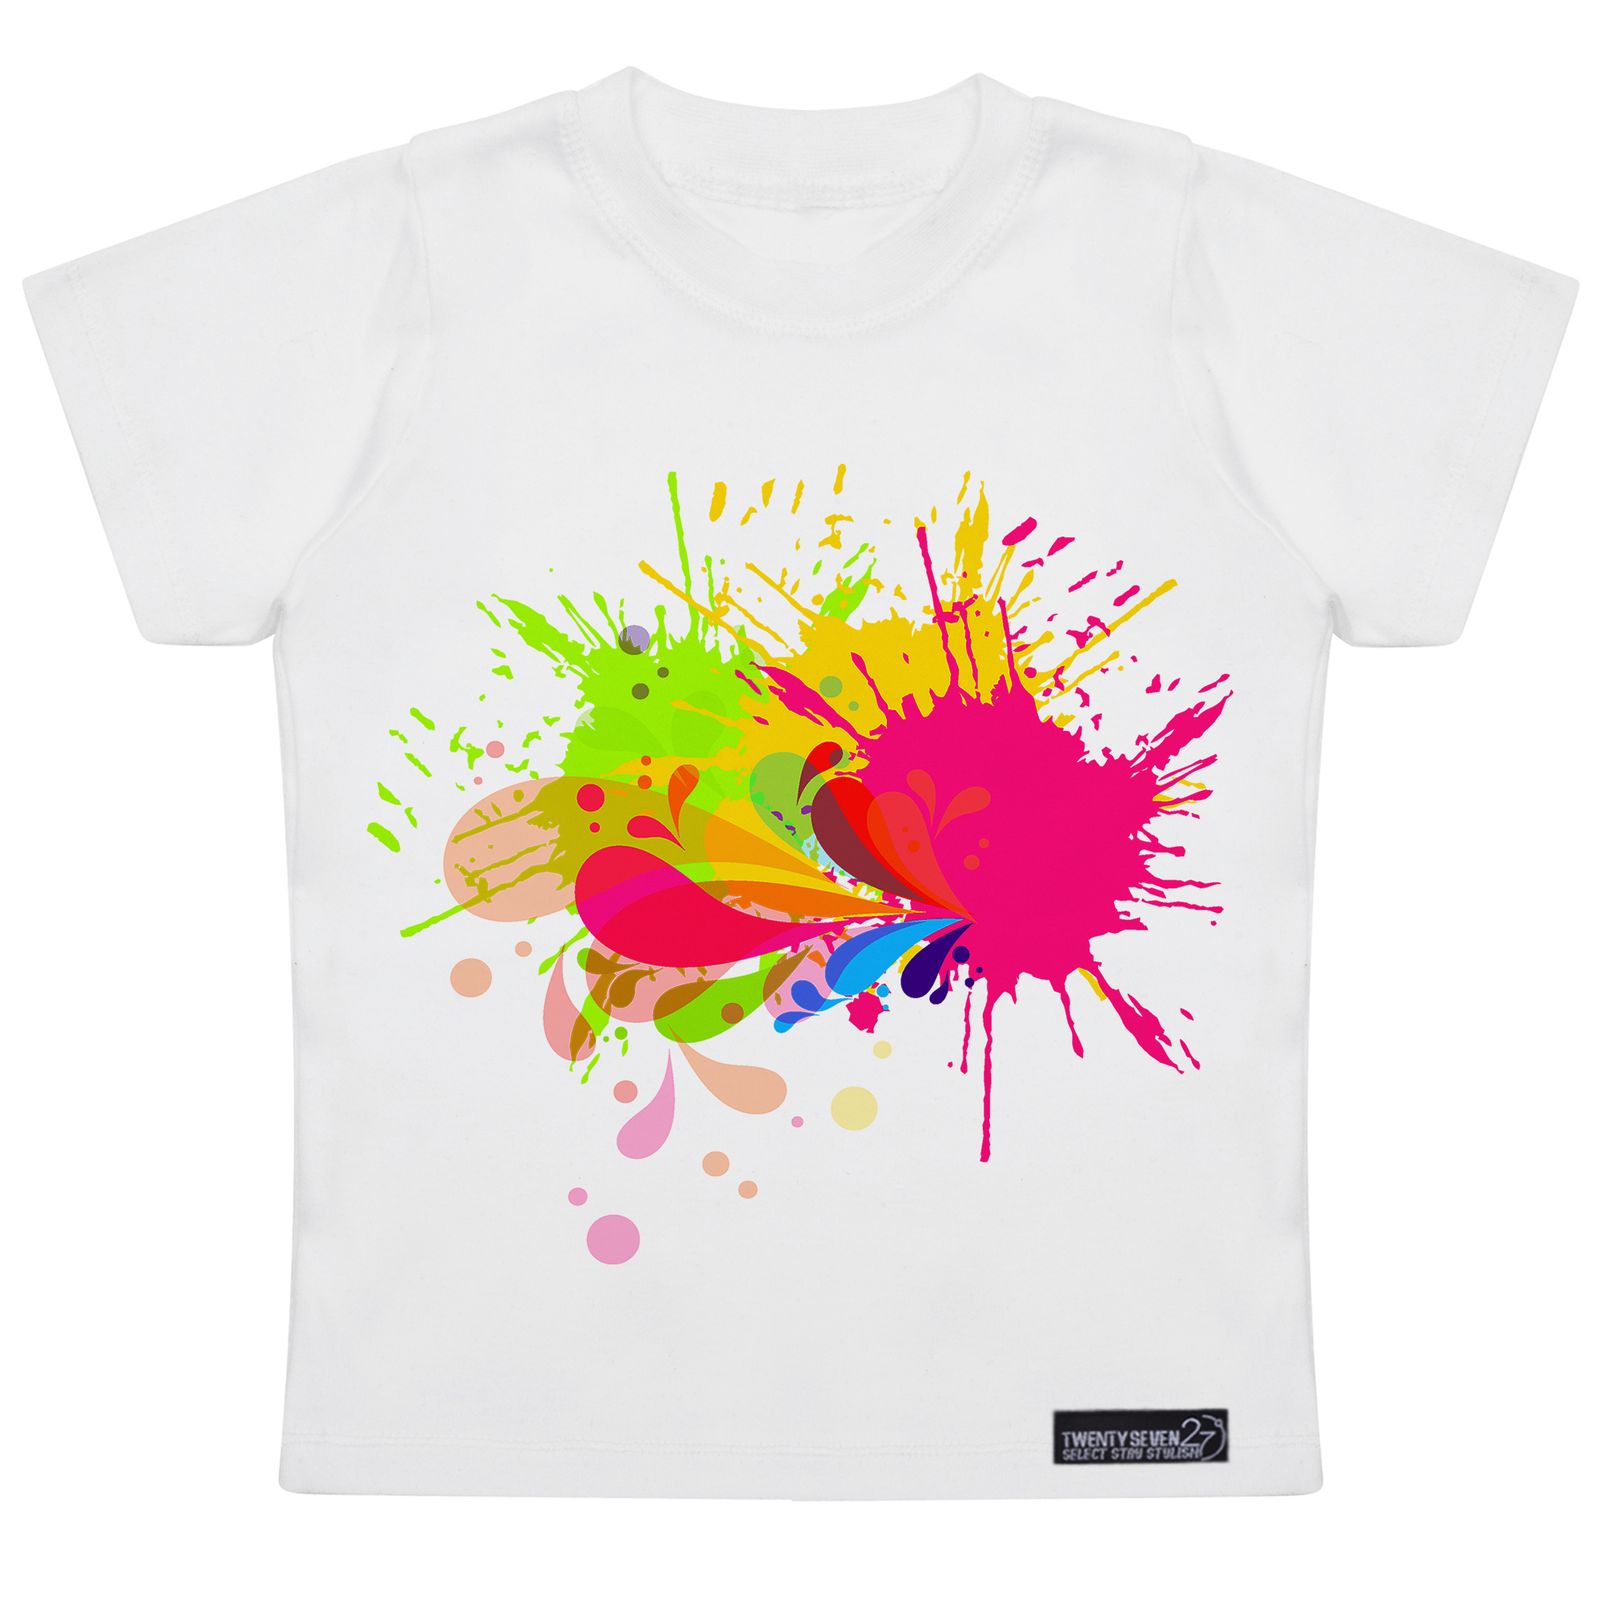 تی شرت آستین کوتاه دخترانه 27 مدل Brush Watercolor کد MH953 -  - 1